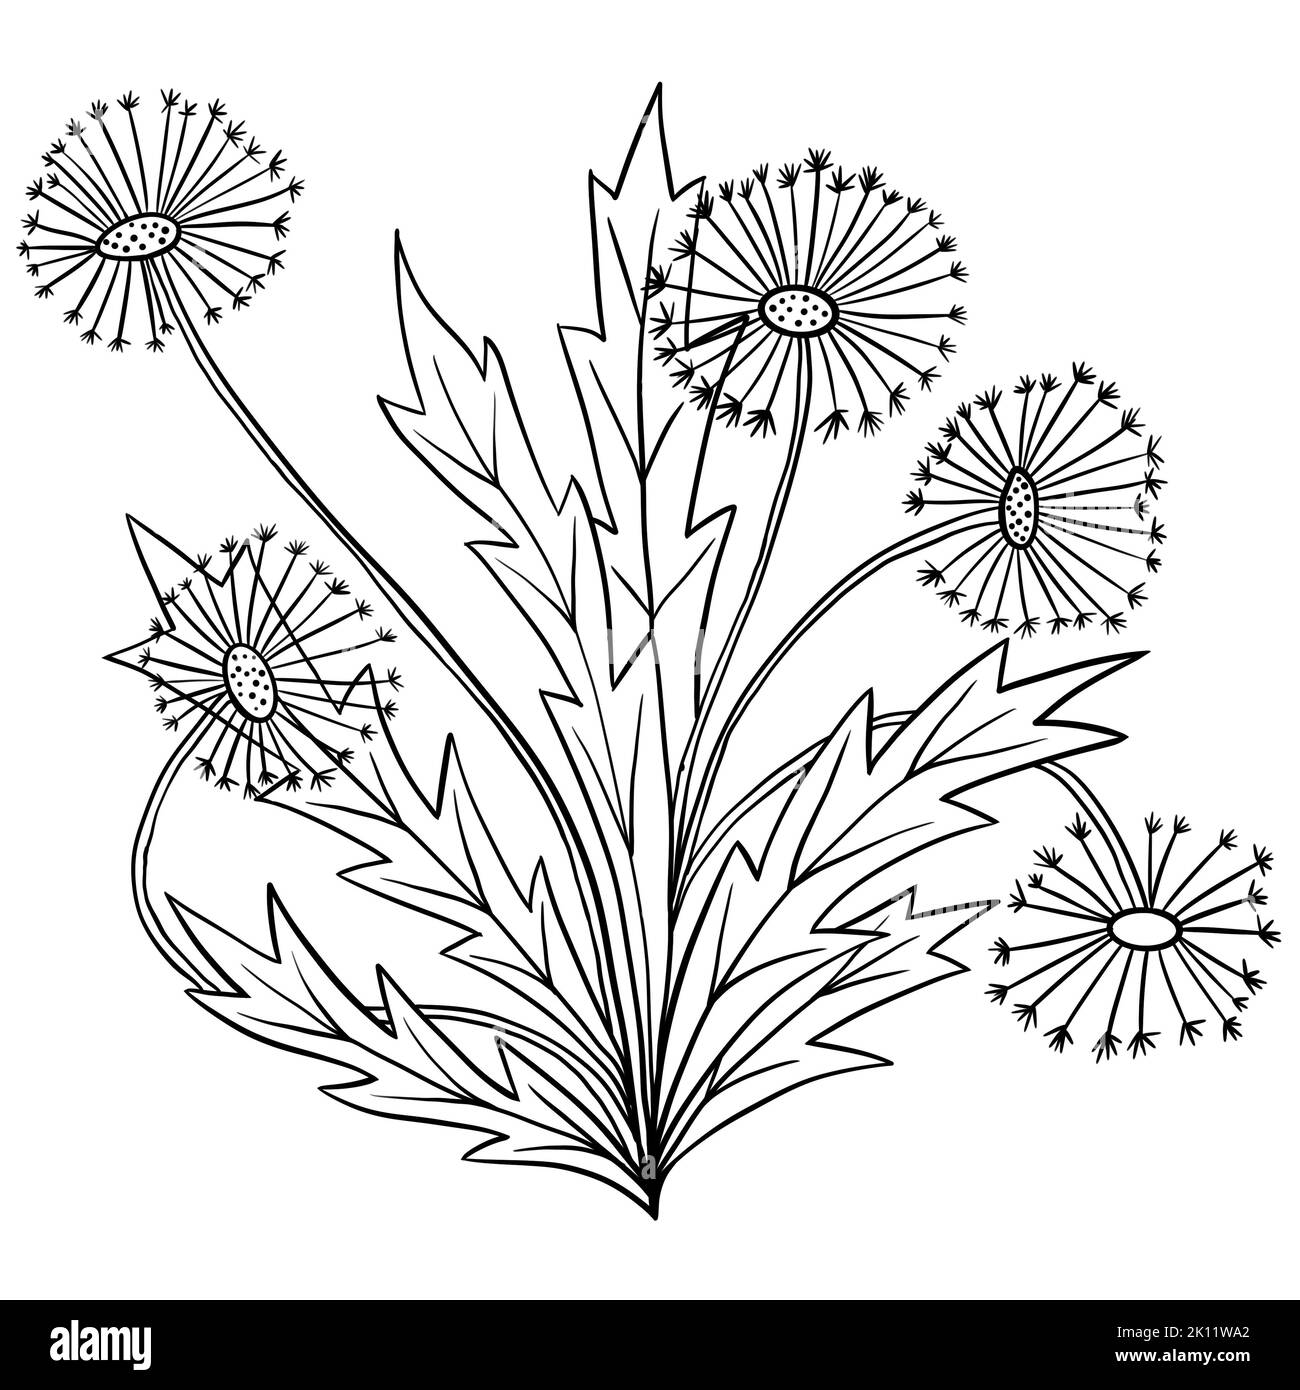 Illustration dessinée à la main de fleurs de pissenlit avec feuilles, plante de jardin sauvage de prairie. Dessin minimaliste à la ligne noire, motif botanique d'été avec lignes noires Banque D'Images